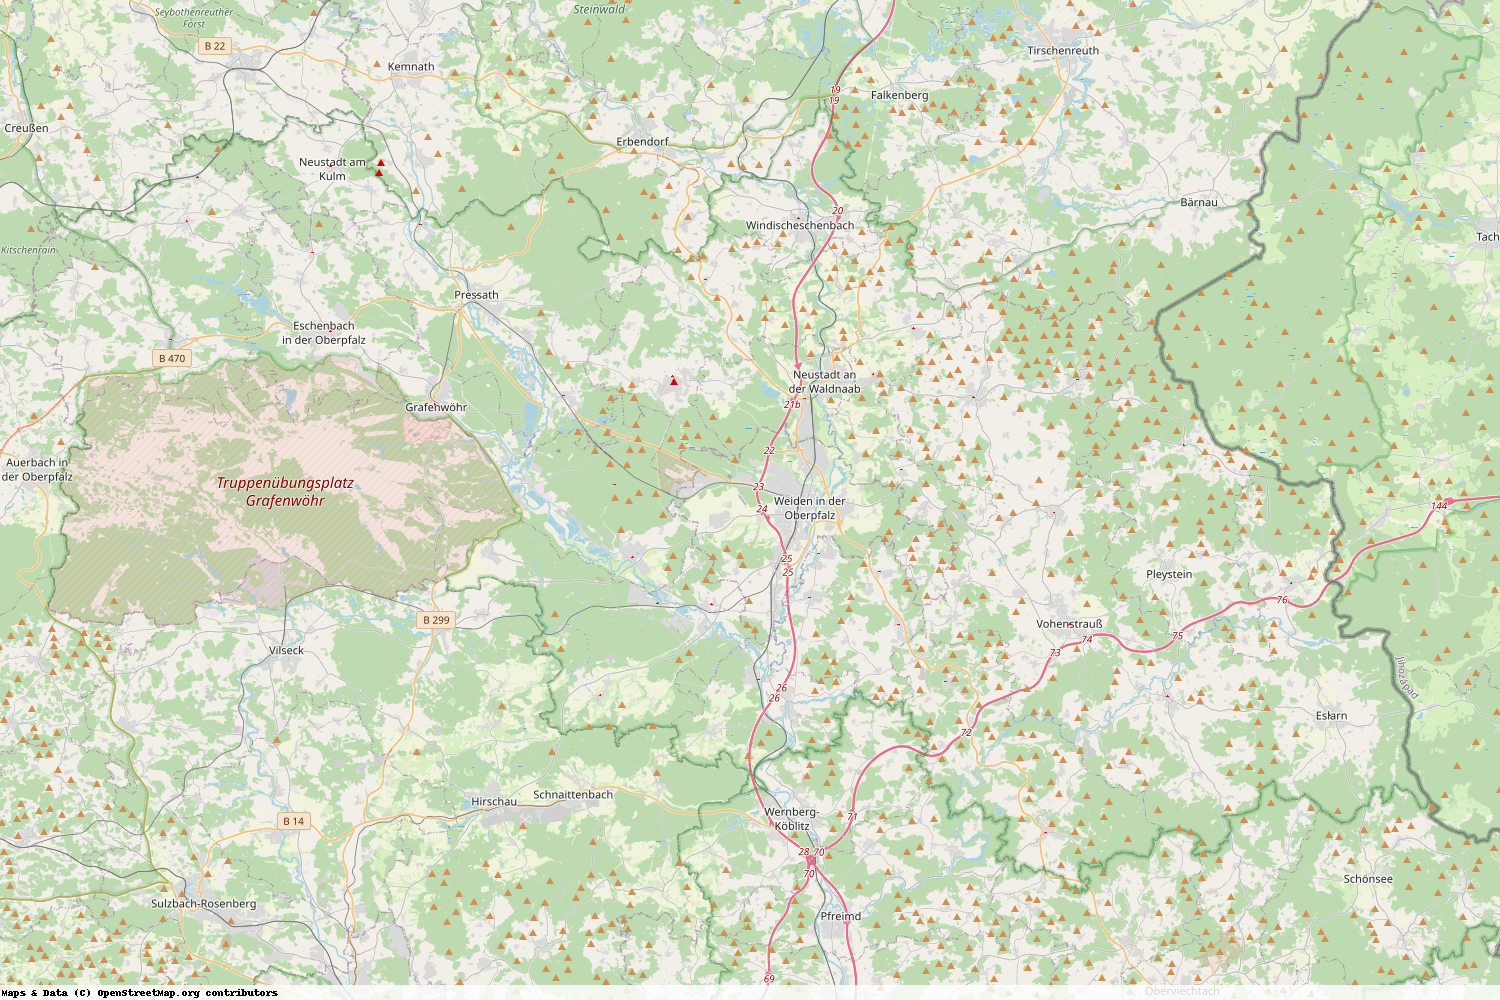 Ist gerade Stromausfall in Bayern - Neustadt a.d. Waldnaab?